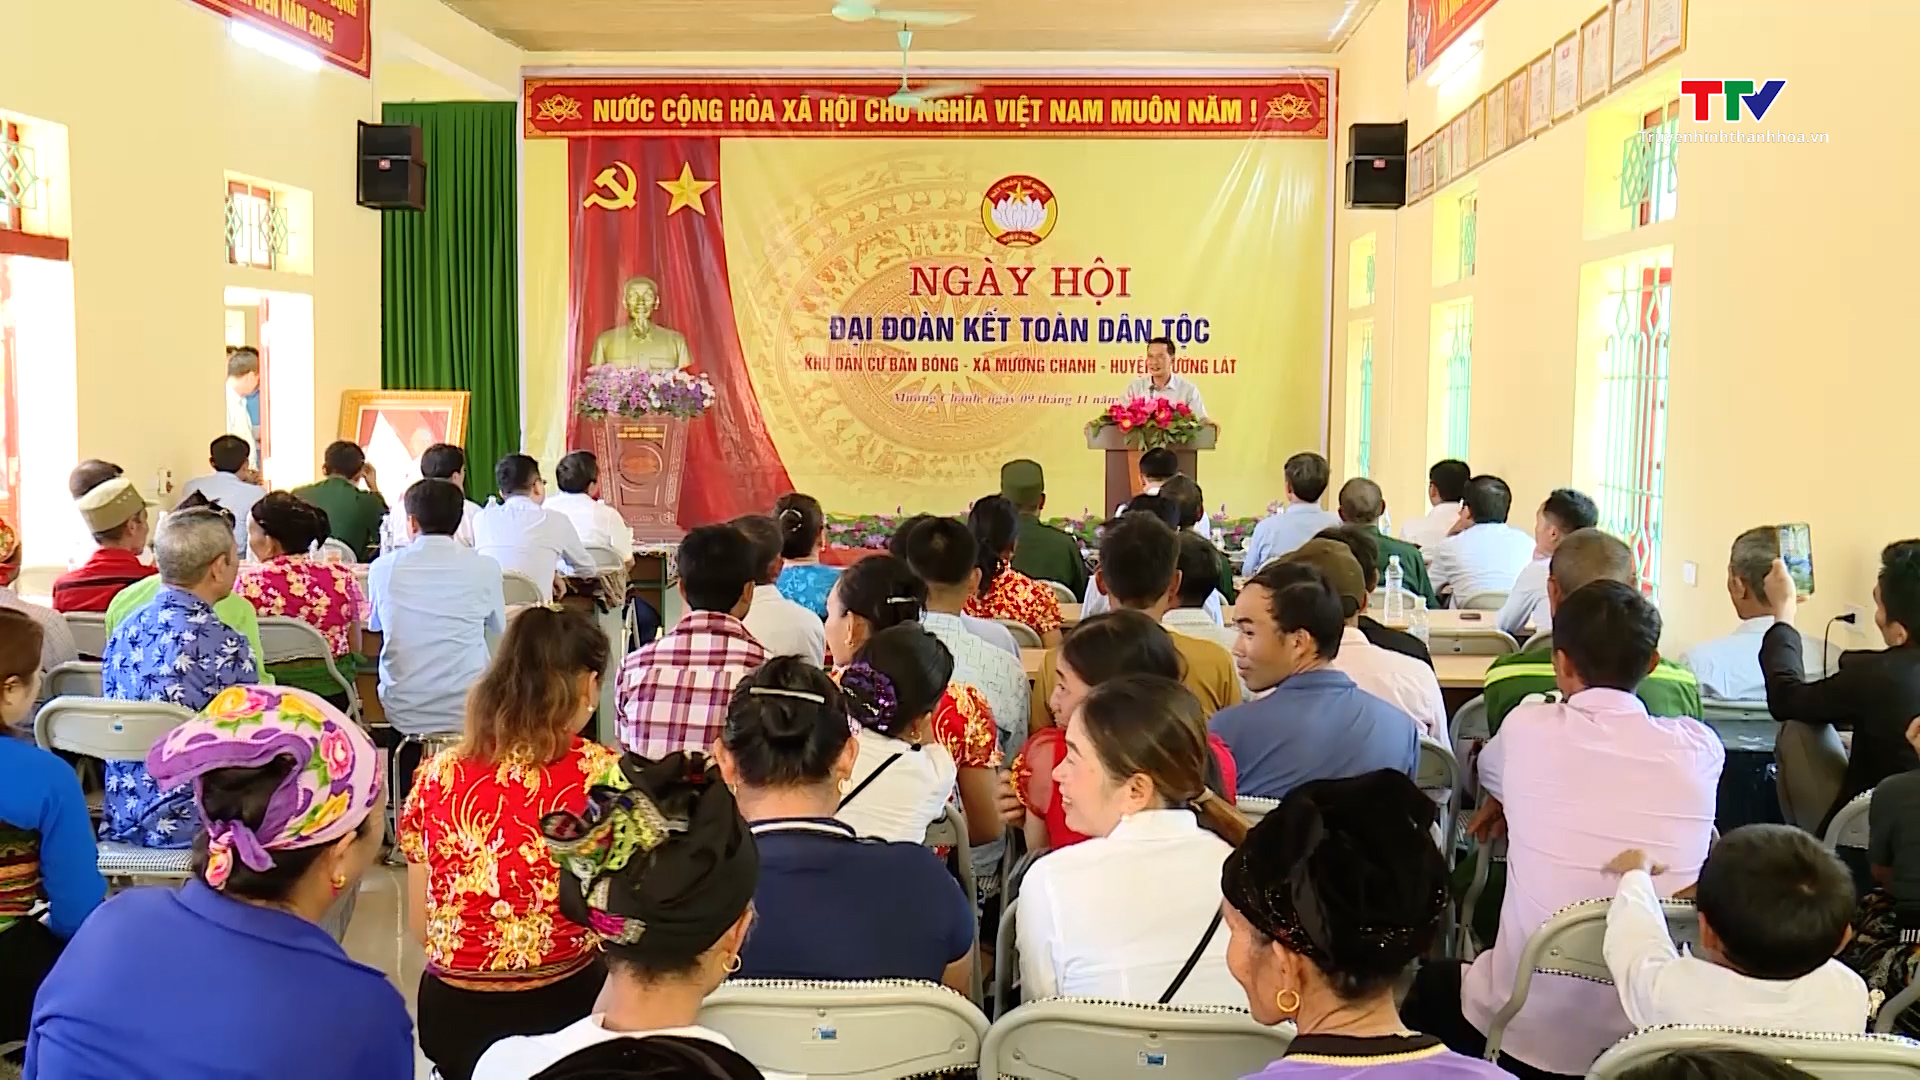 Đồng chí Trịnh Tuấn Sinh, Phó Bí thư Tỉnh ủy dự Ngày hội Đại đoàn kết toàn dân tộc tại huyện Mường Lát - Ảnh 2.